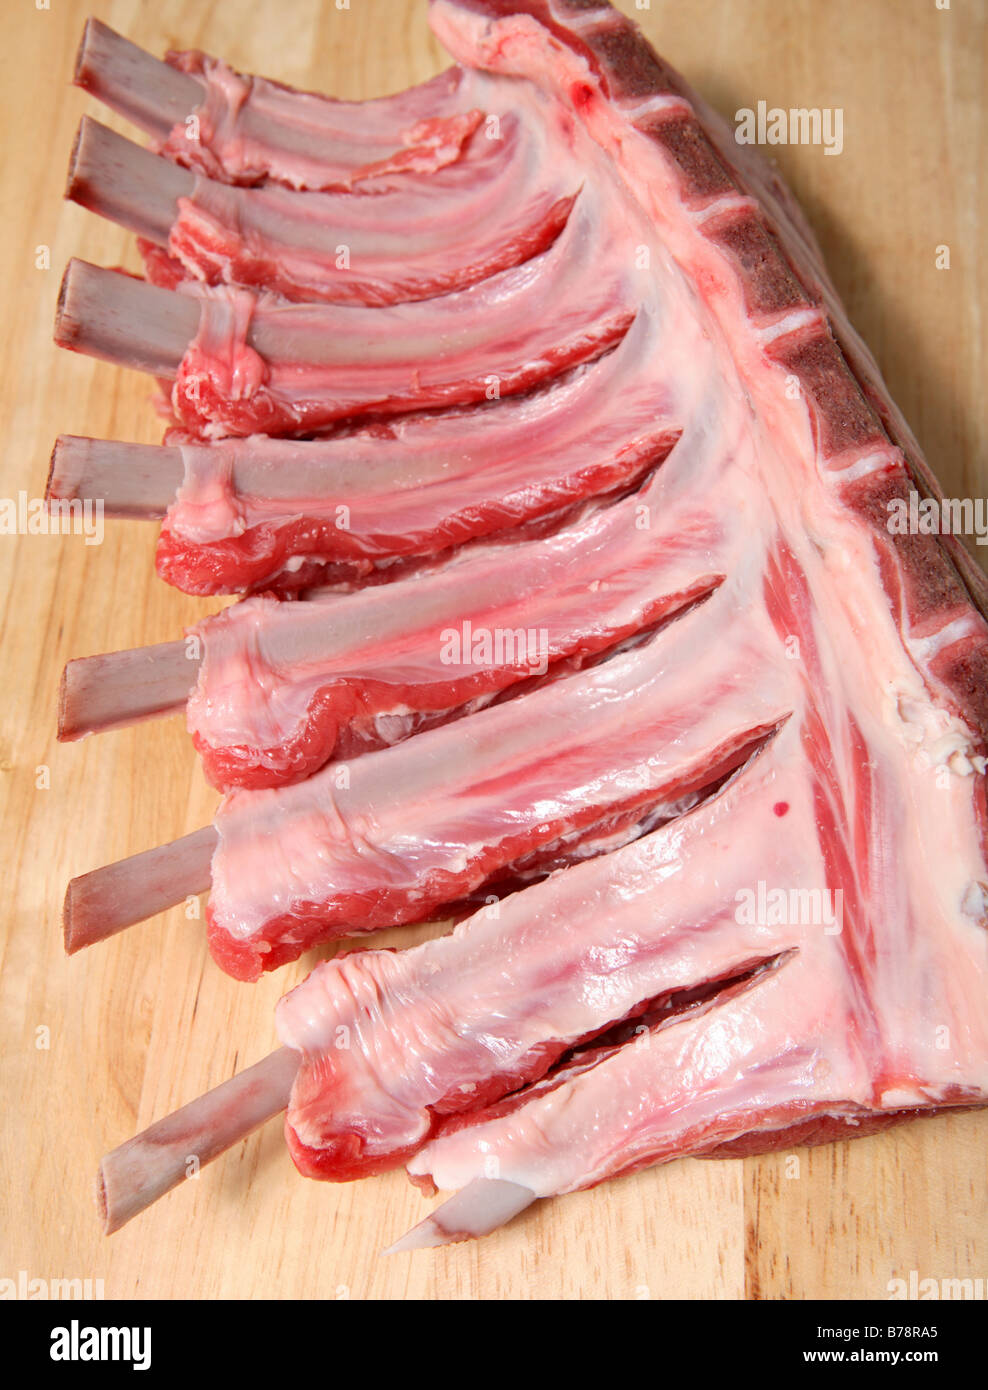 Eine "frenched" Rack mit Lamm, mit dem Fleisch von den Knochen zurückgeschoben und dazwischen geschnitten. Stockfoto